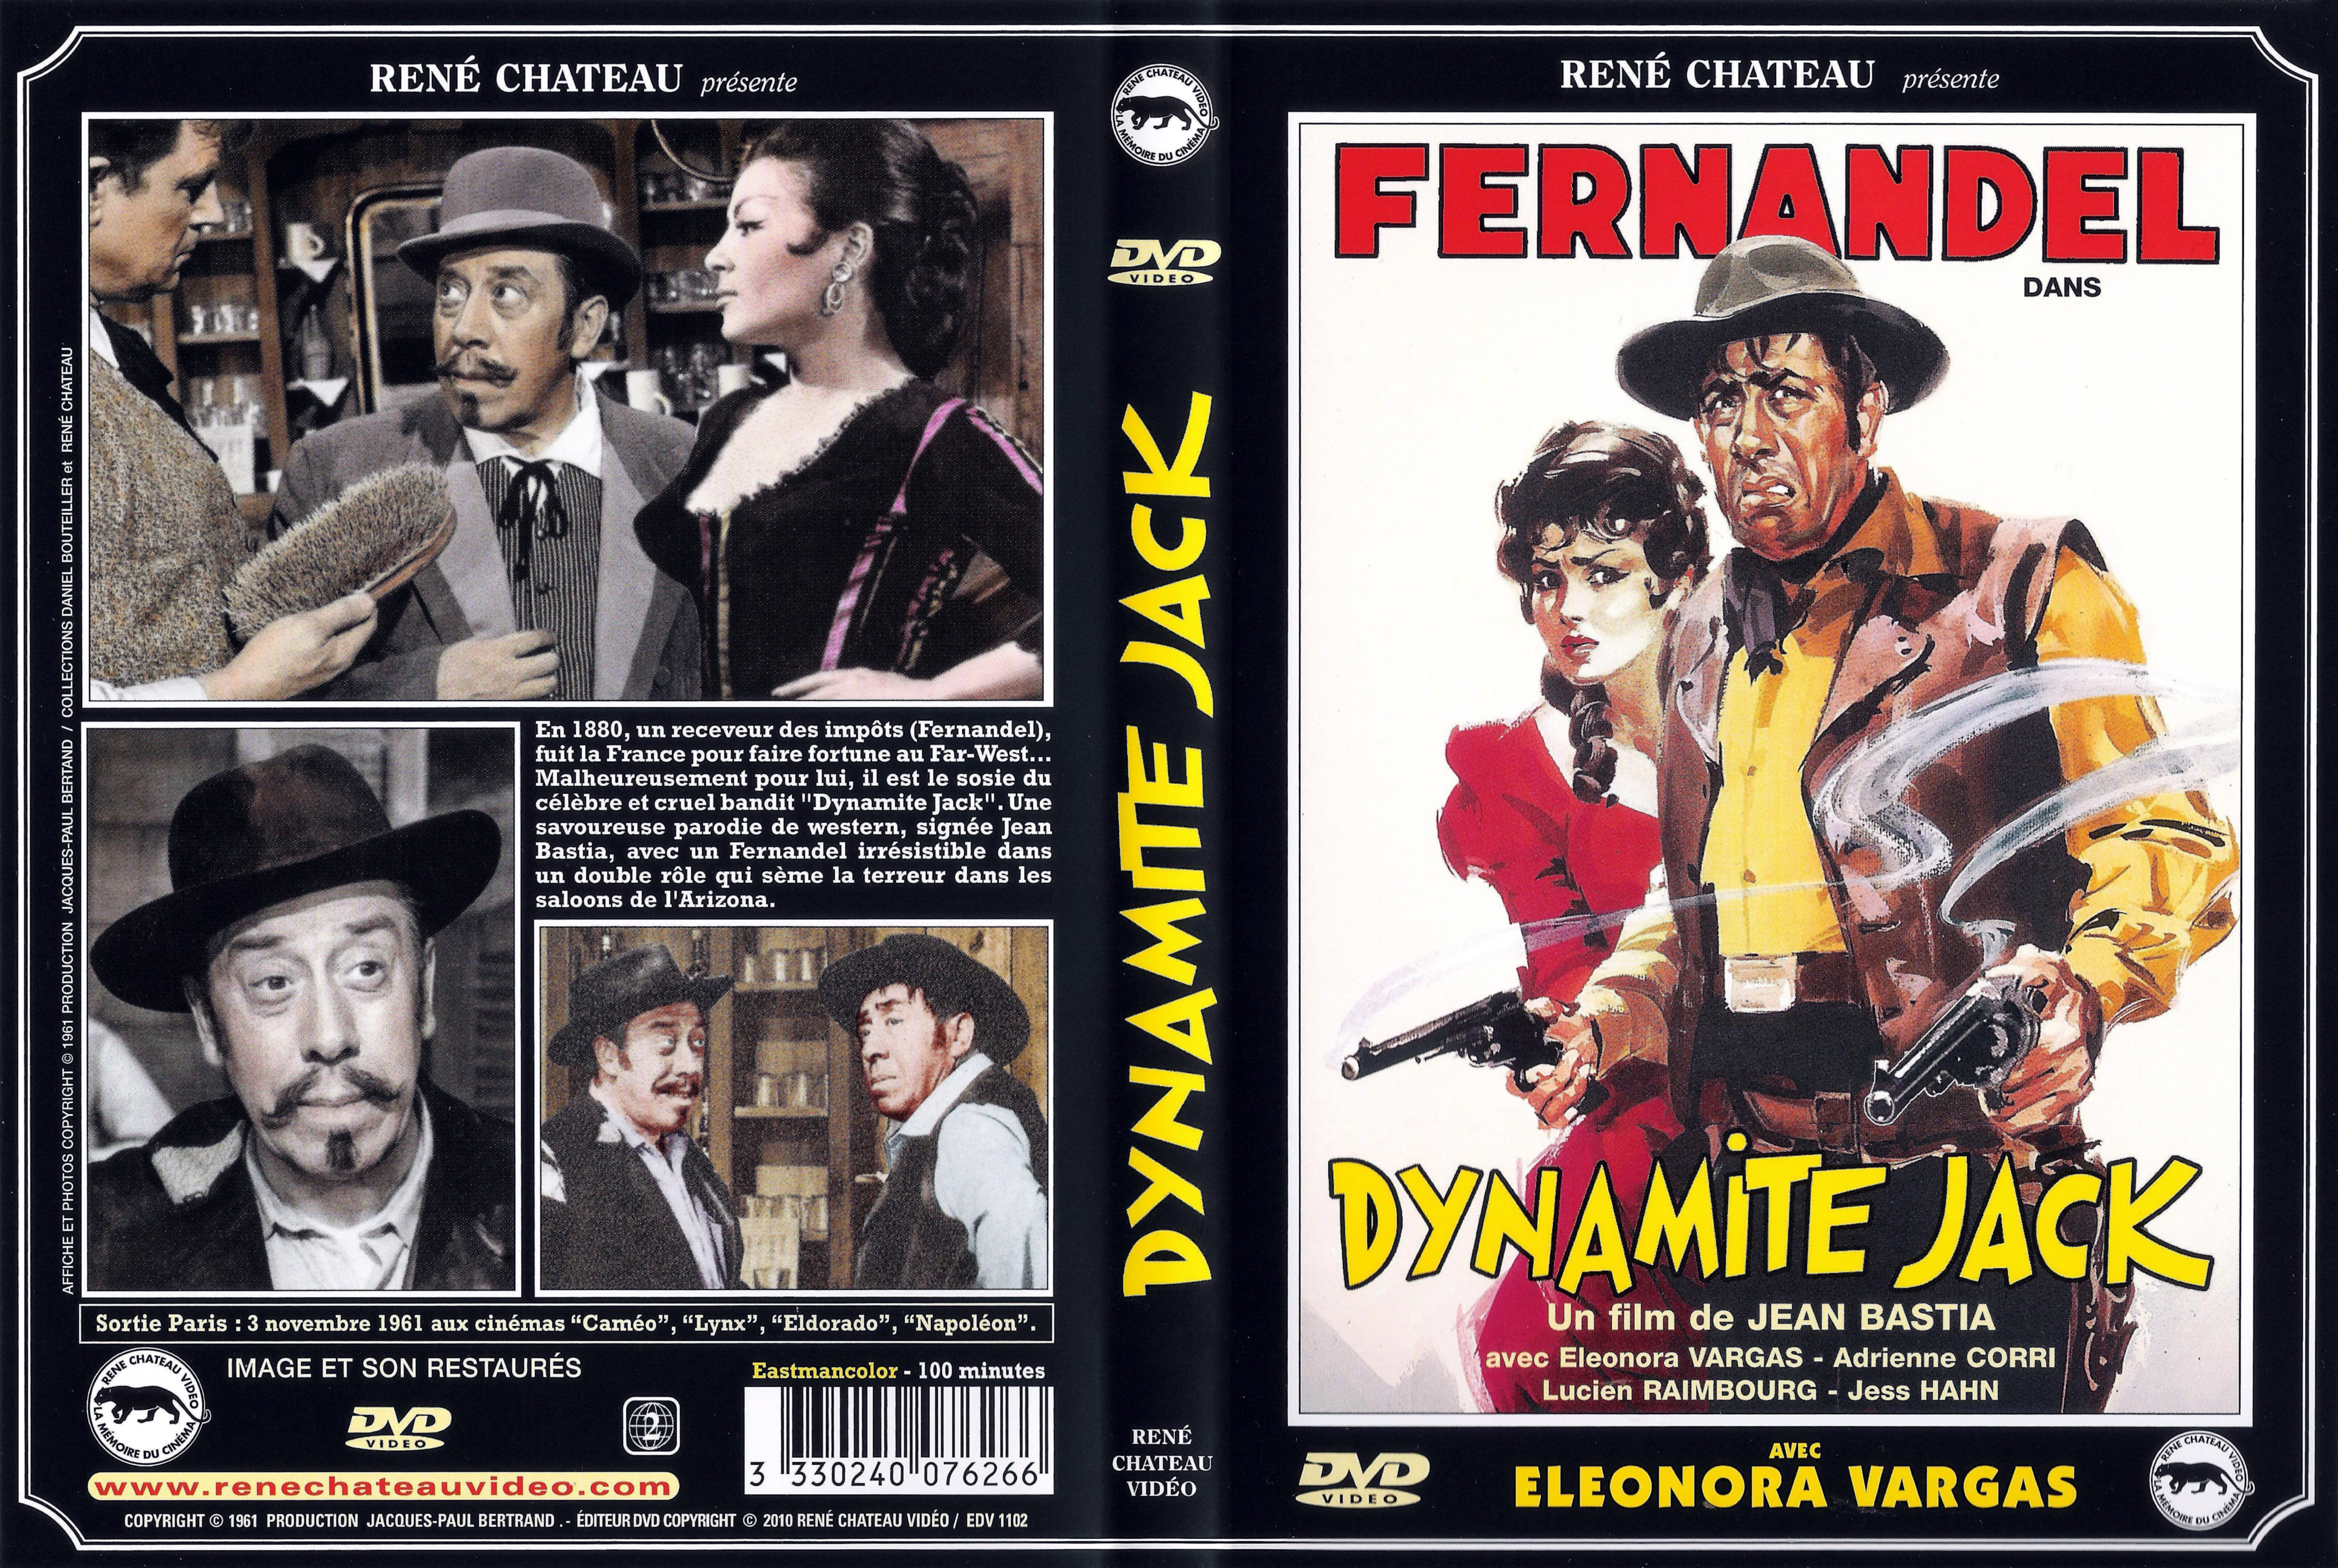 Jaquette DVD Dynamite Jack v3